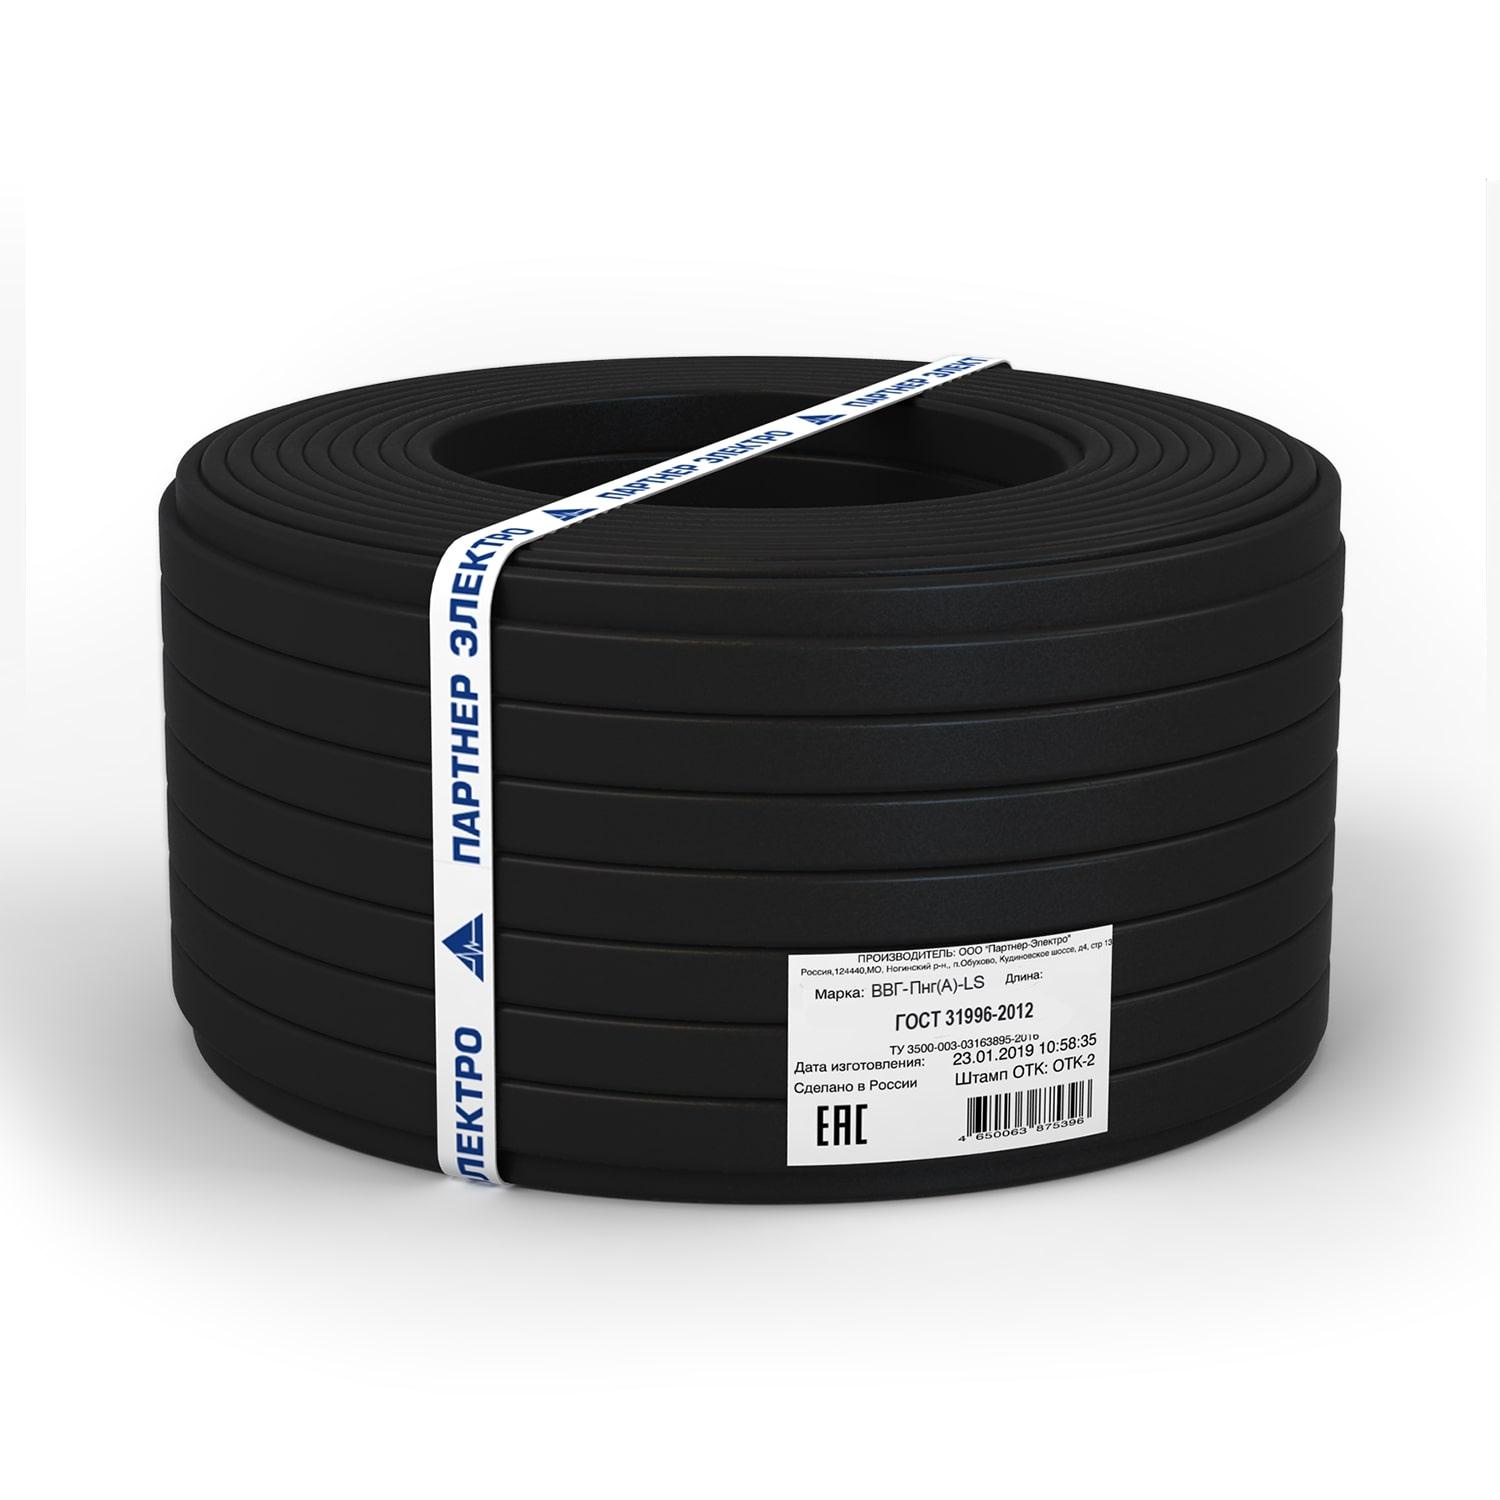 фото Силовой кабель Партнер-Электро Кабель ВВГ-ПнгГОСТ (А)-LS 3х2,5 ГОСТ (20м), черный